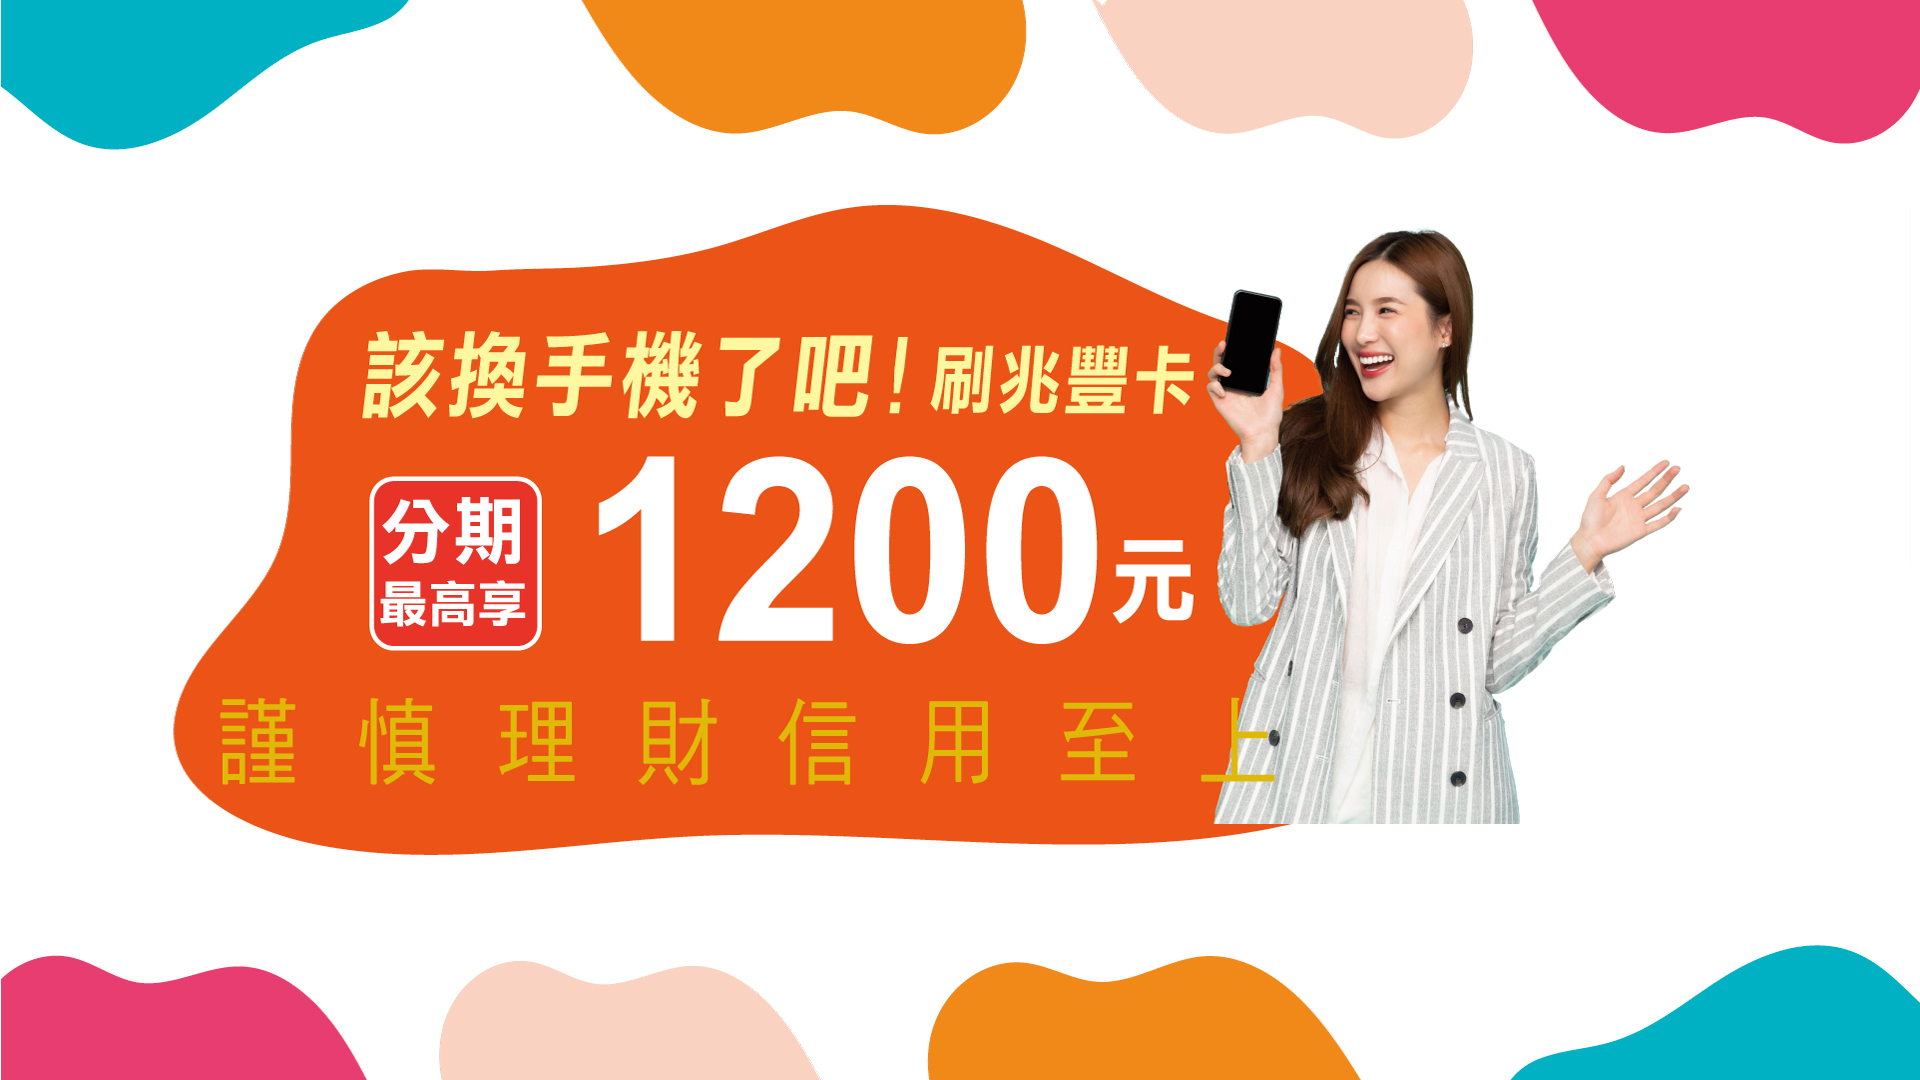 「該換手機了吧！刷兆豐卡 分期最高享1200元」Banner